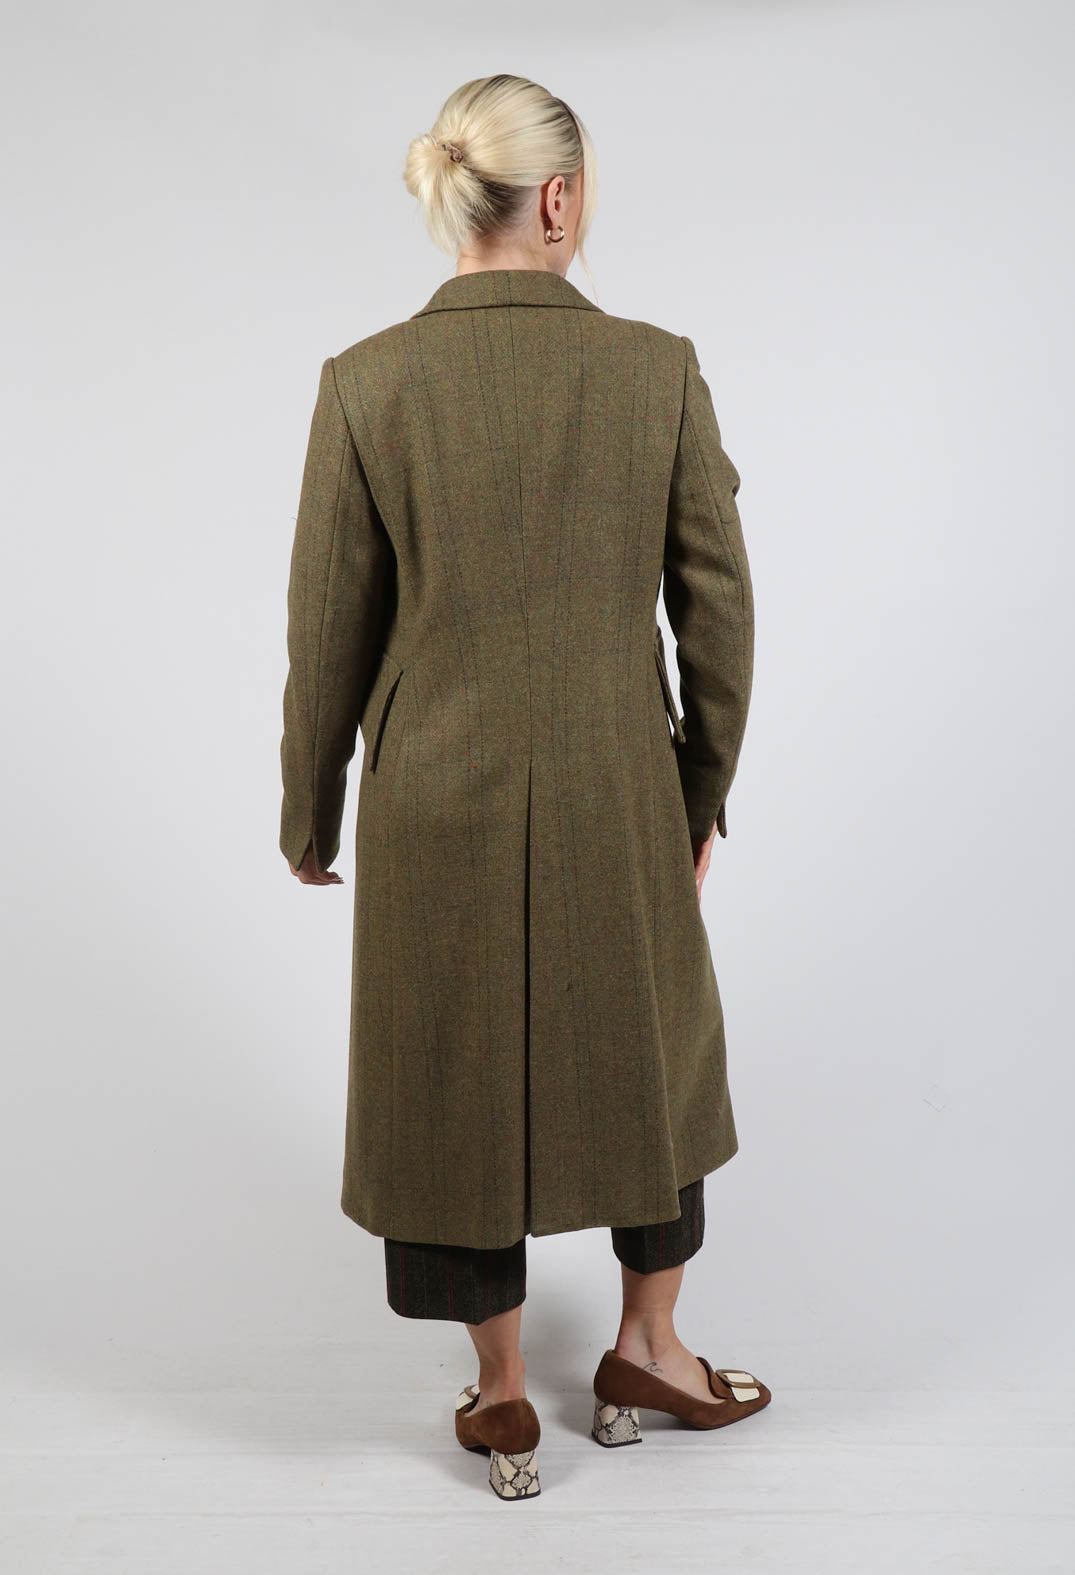 Verdi Midi Coat in Tweed